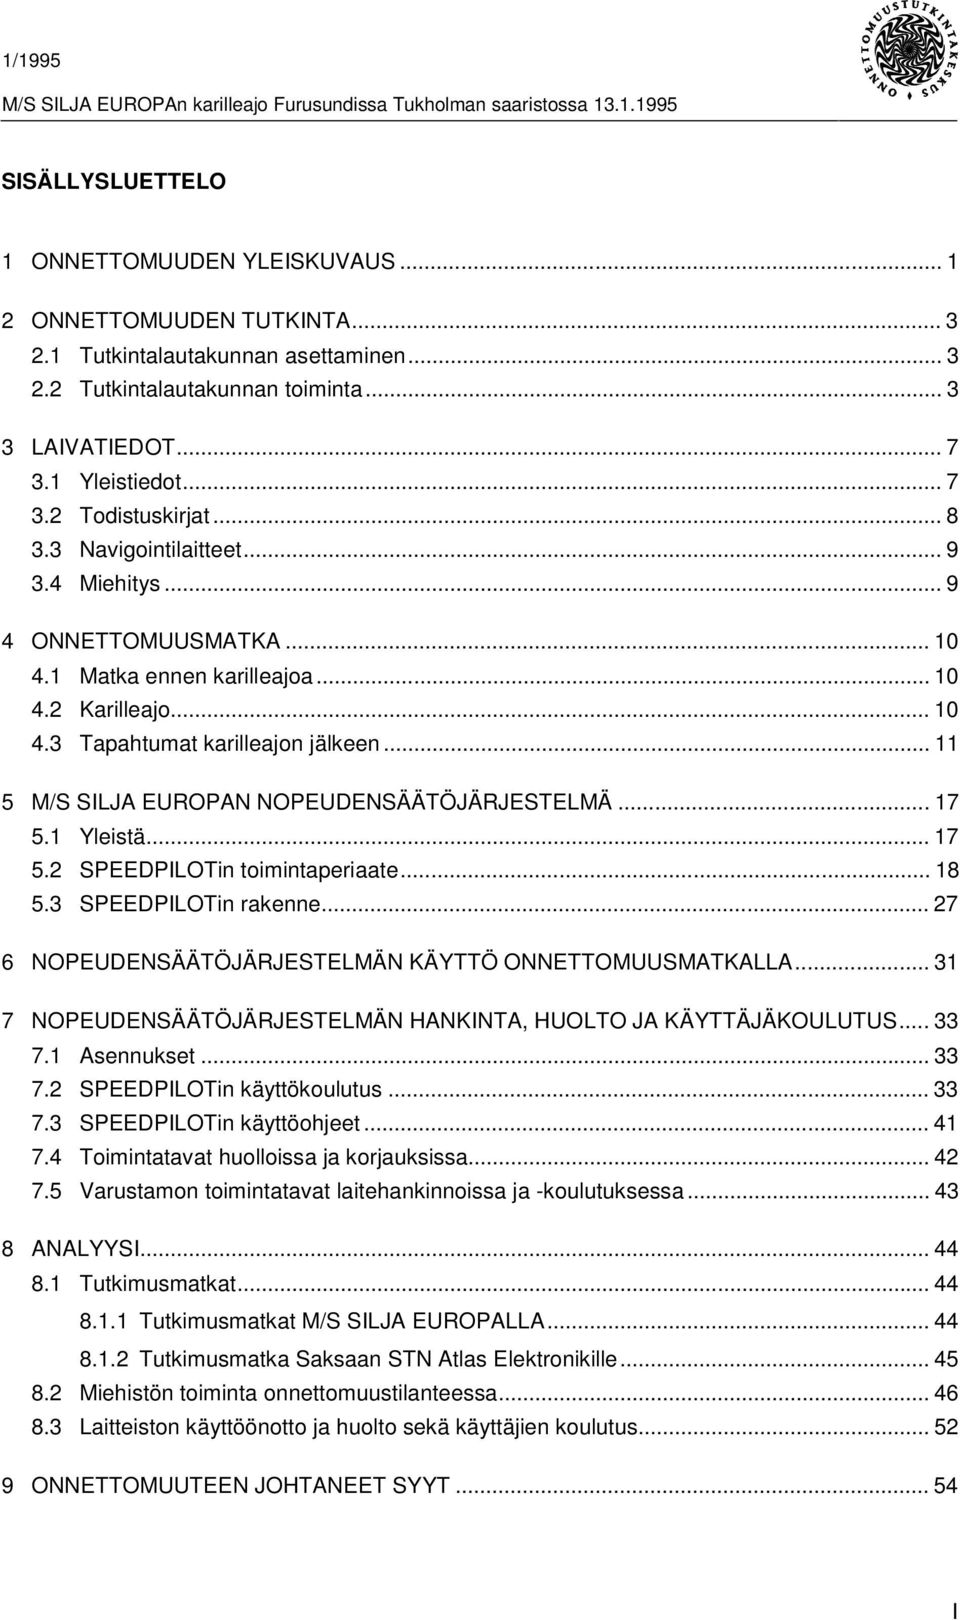 .. 11 5 M/S SILJA EUROPAN NOPEUDENSÄÄTÖJÄRJESTELMÄ... 17 5.1 Yleistä... 17 5.2 SPEEDPILOTin toimintaperiaate... 18 5.3 SPEEDPILOTin rakenne... 27 6 NOPEUDENSÄÄTÖJÄRJESTELMÄN KÄYTTÖ ONNETTOMUUSMATKALLA.